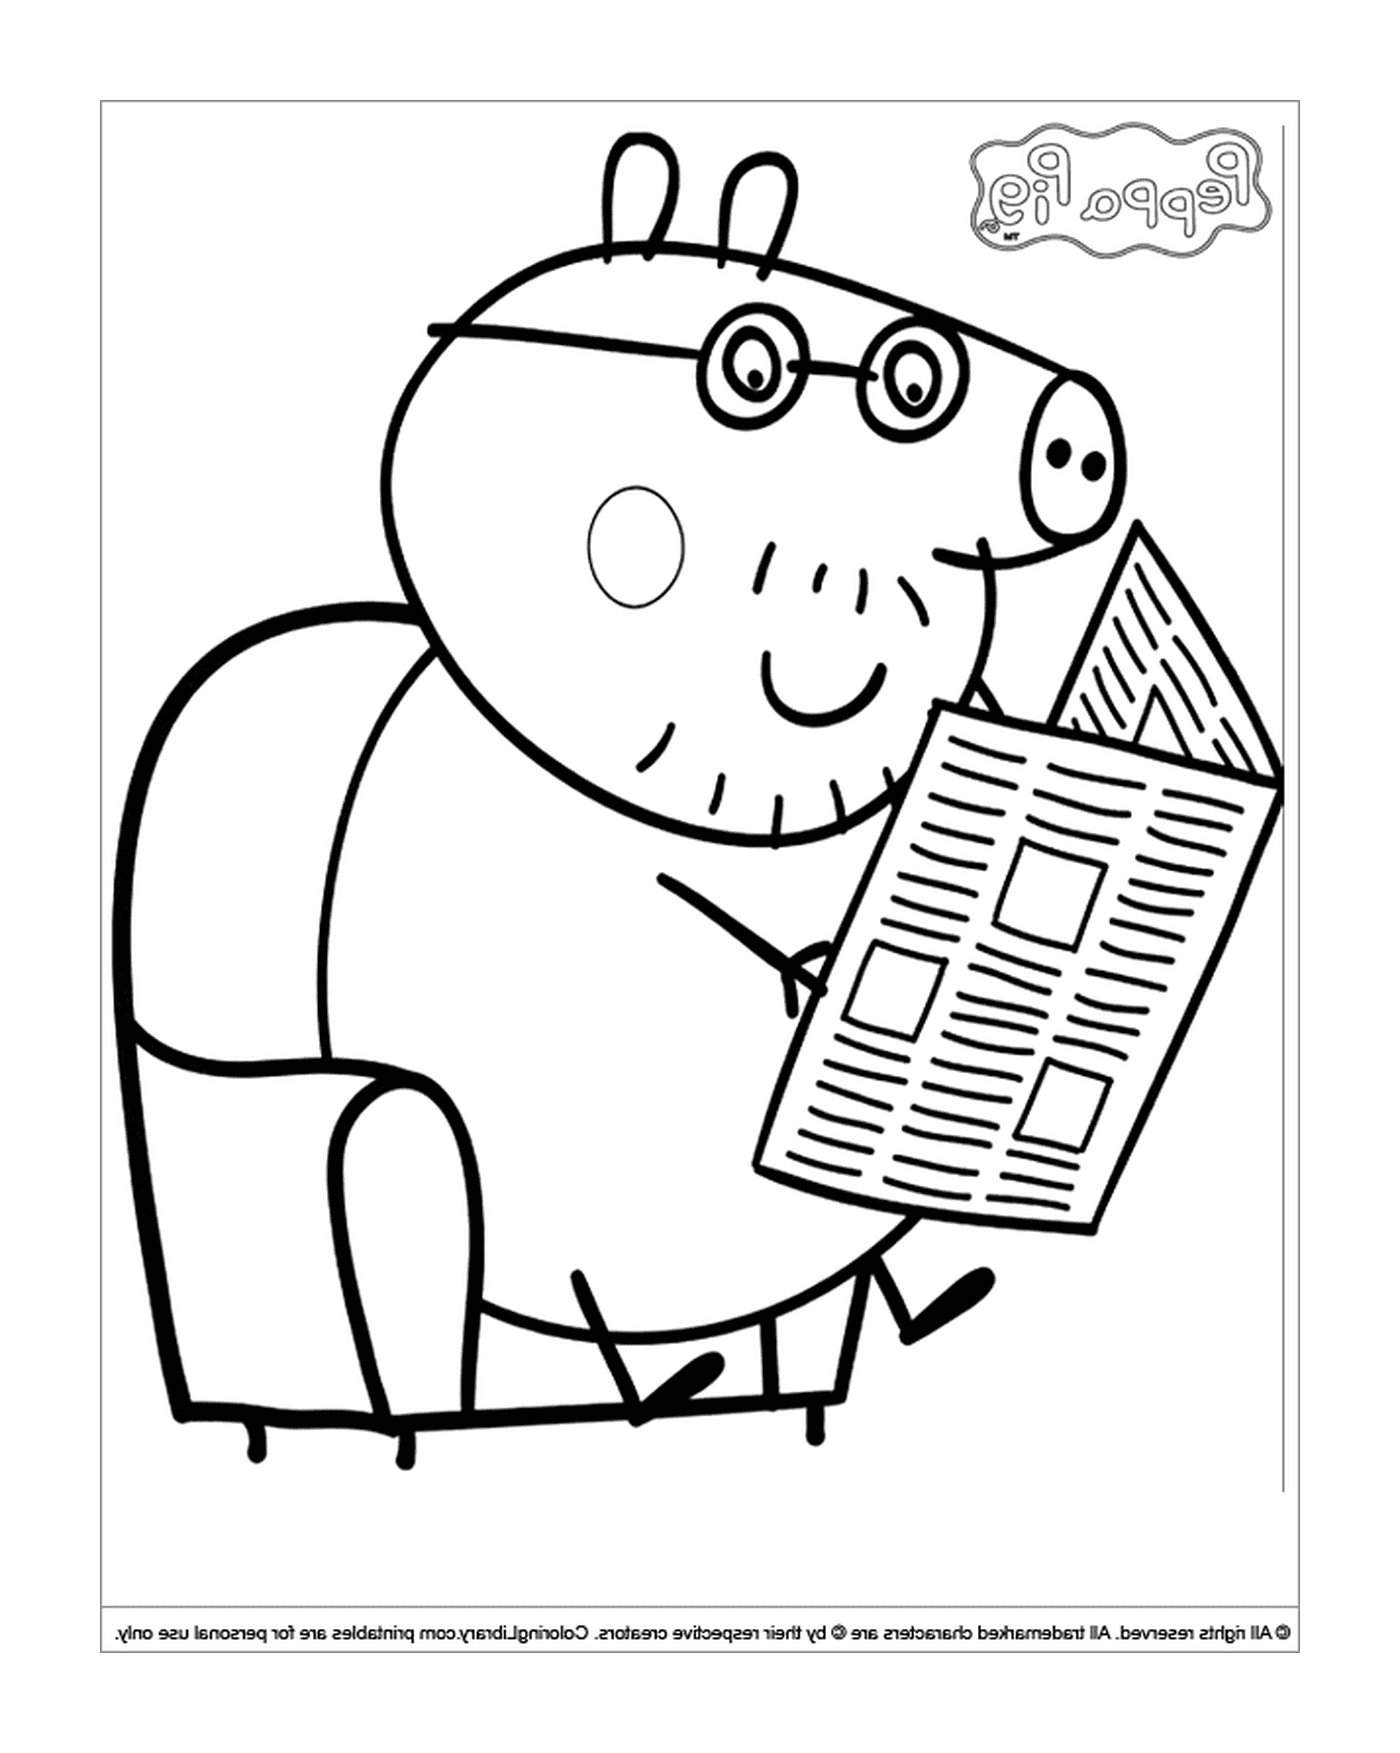  阅读报纸的猪 